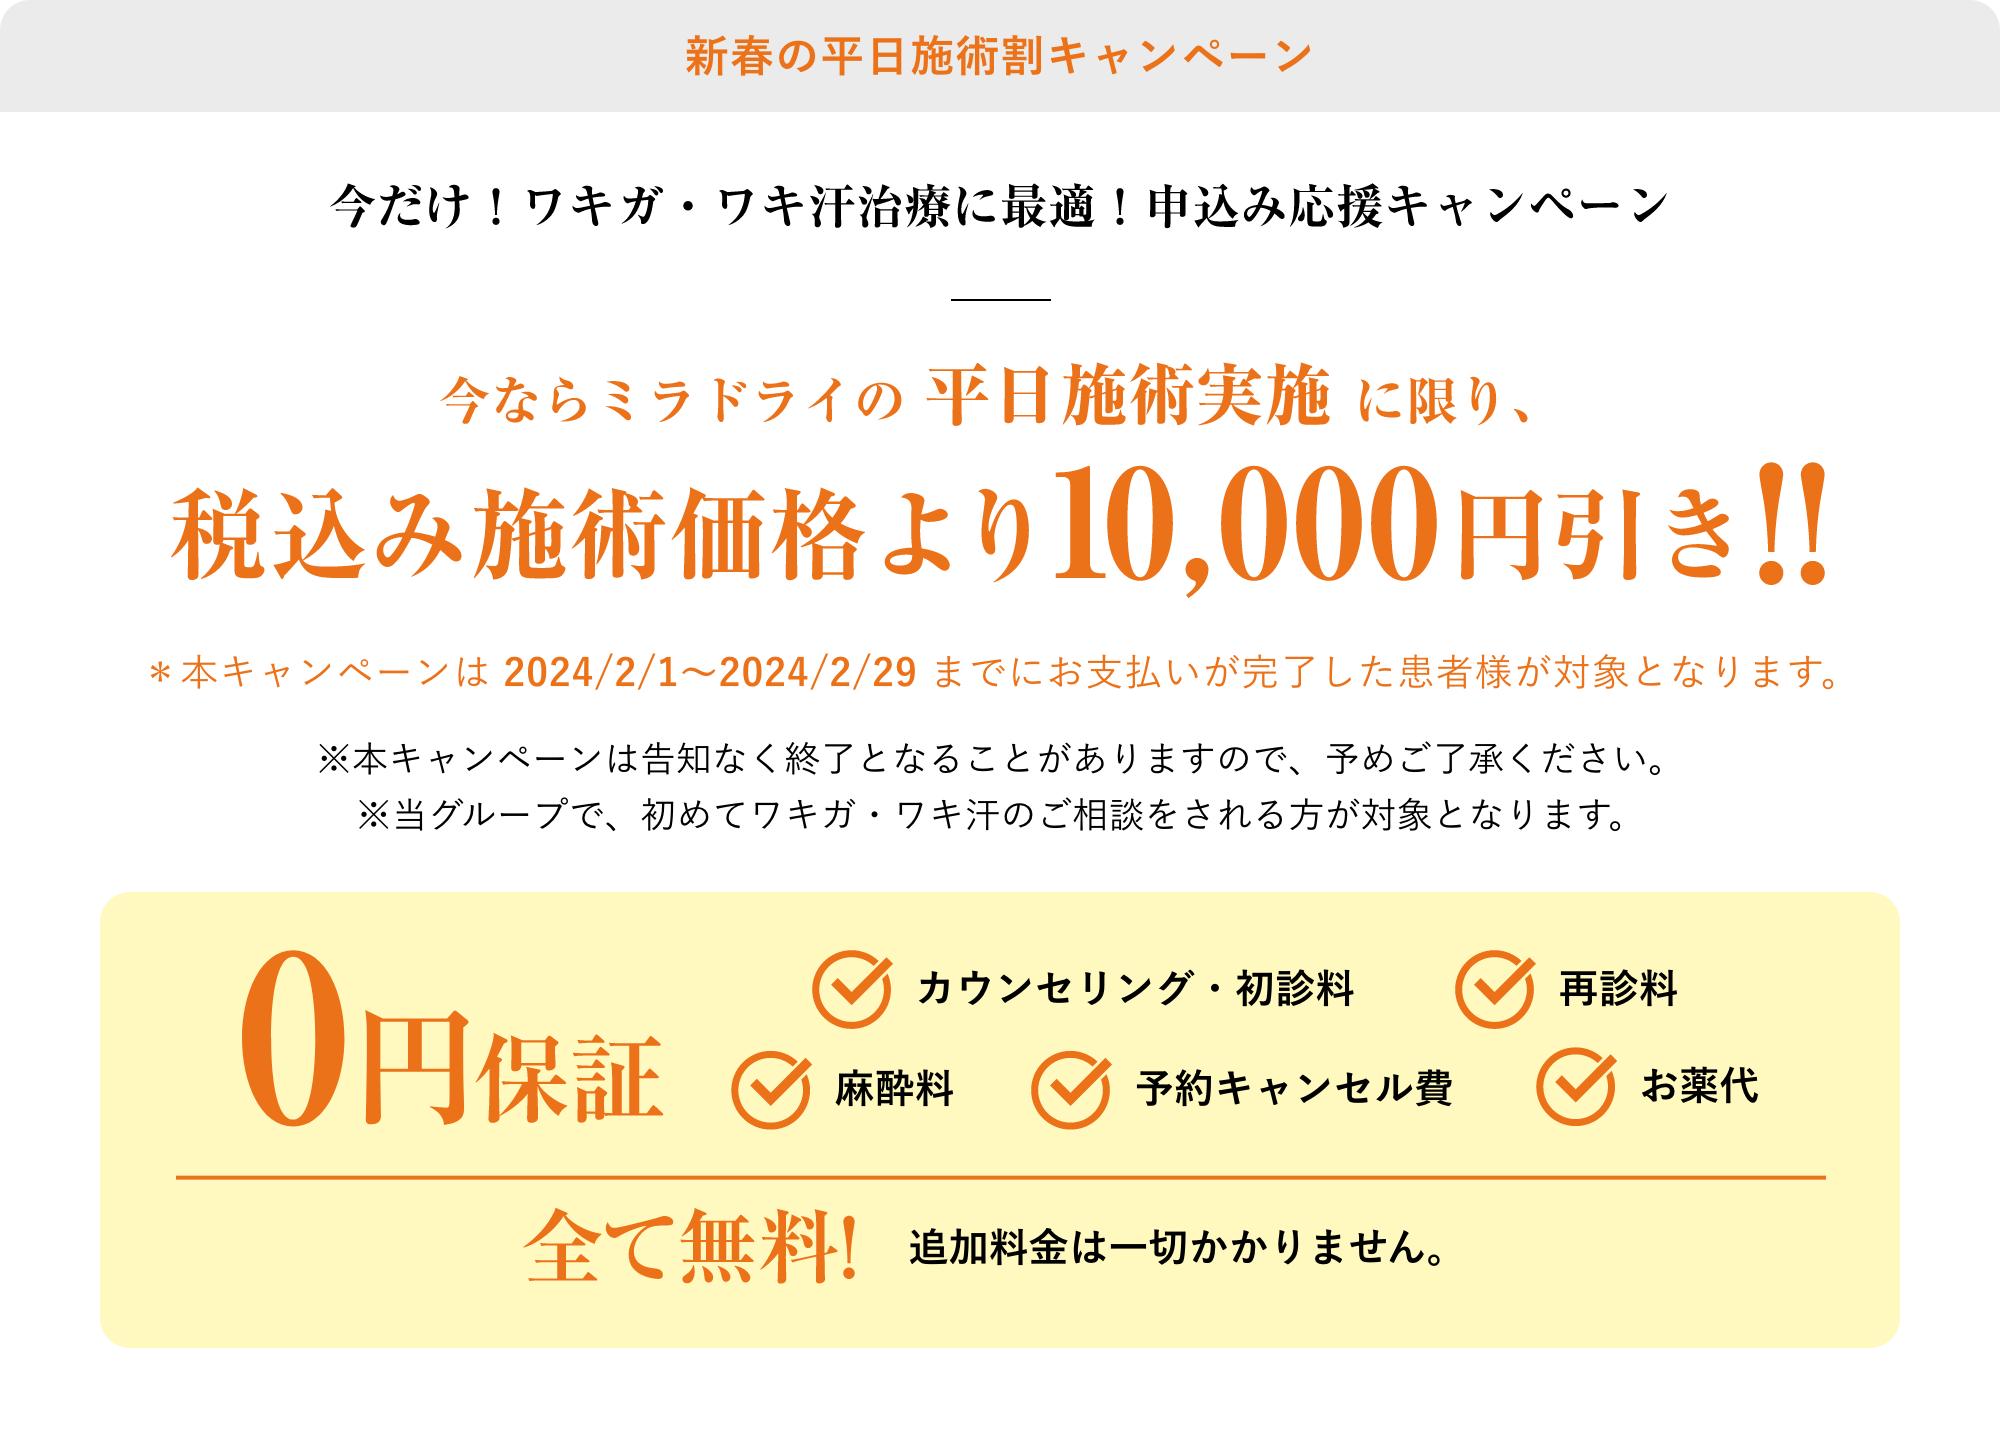 新春の平日施術割キャンペーン税込み施術価格より10,000円引き!